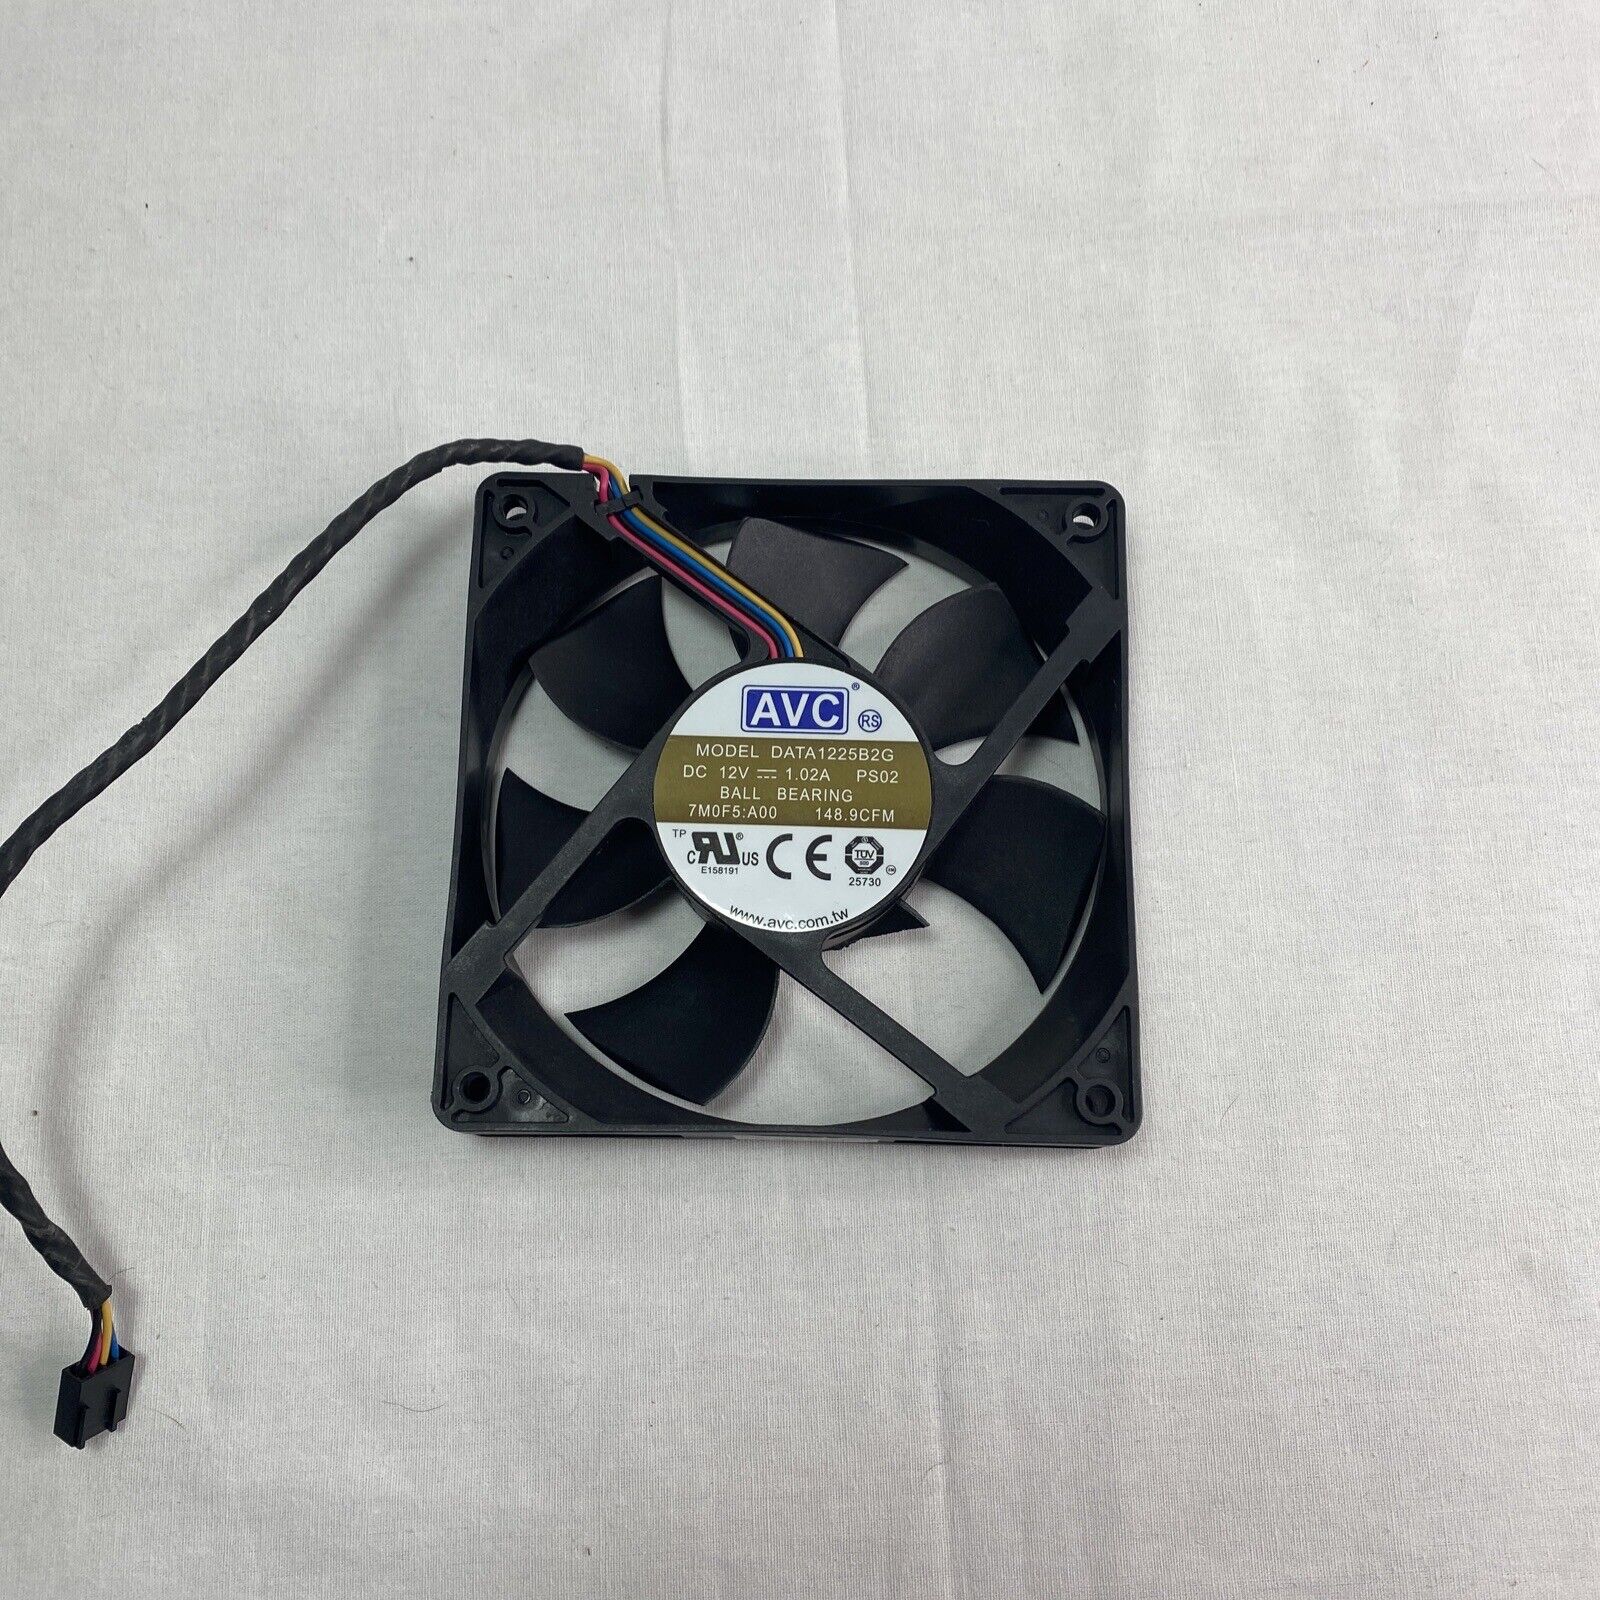 AVC DATA1225B2G 12V 120mm 4-pin PWM Fan - Server PC Case Cooling Fan 12x12x25 cm